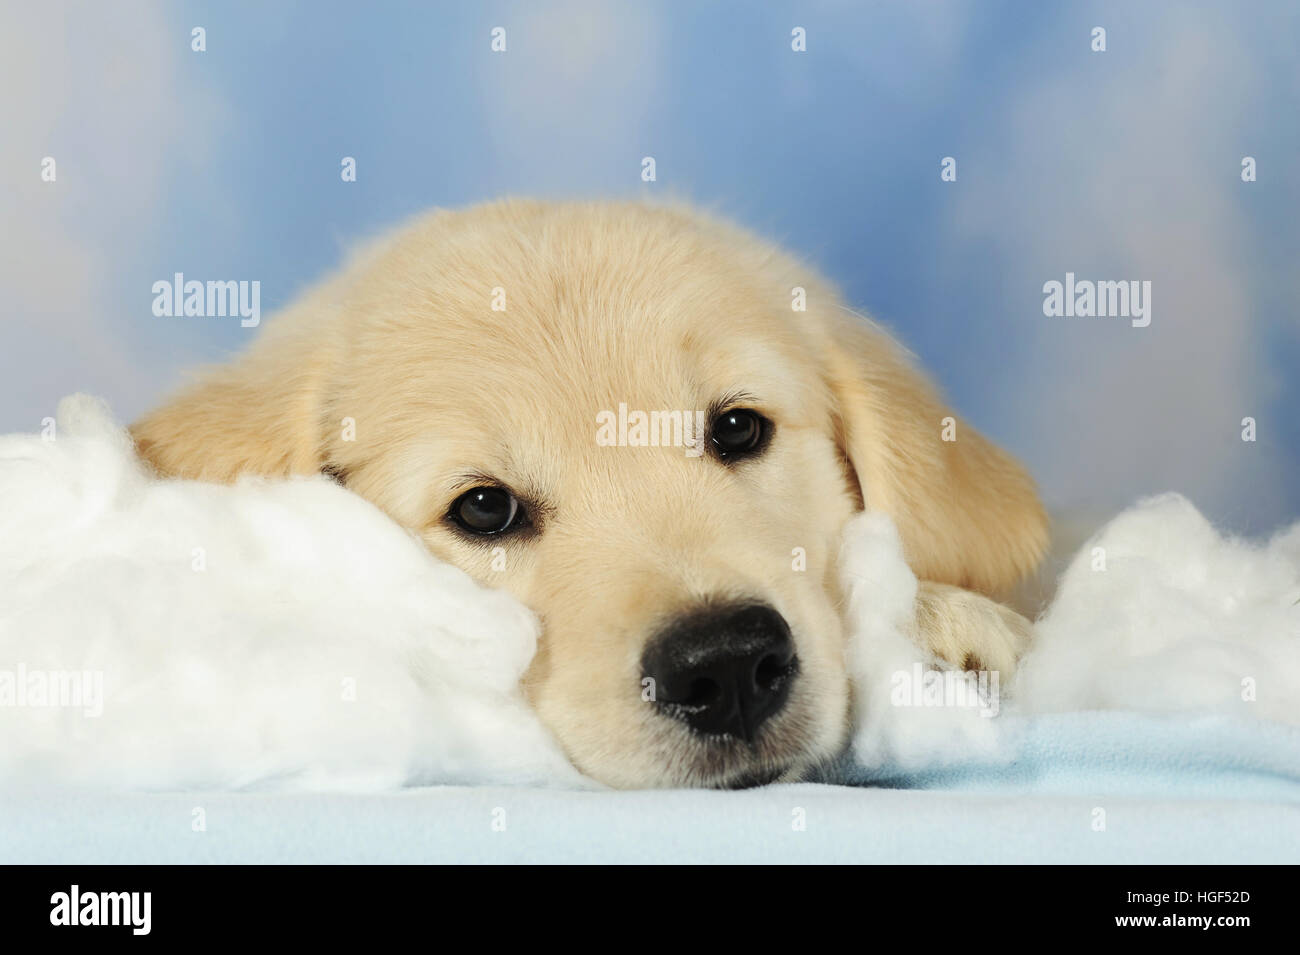 Golden Retriever cucciolo, 8 settimane di età, giacente sul cotone, cielo, nuvole Foto Stock